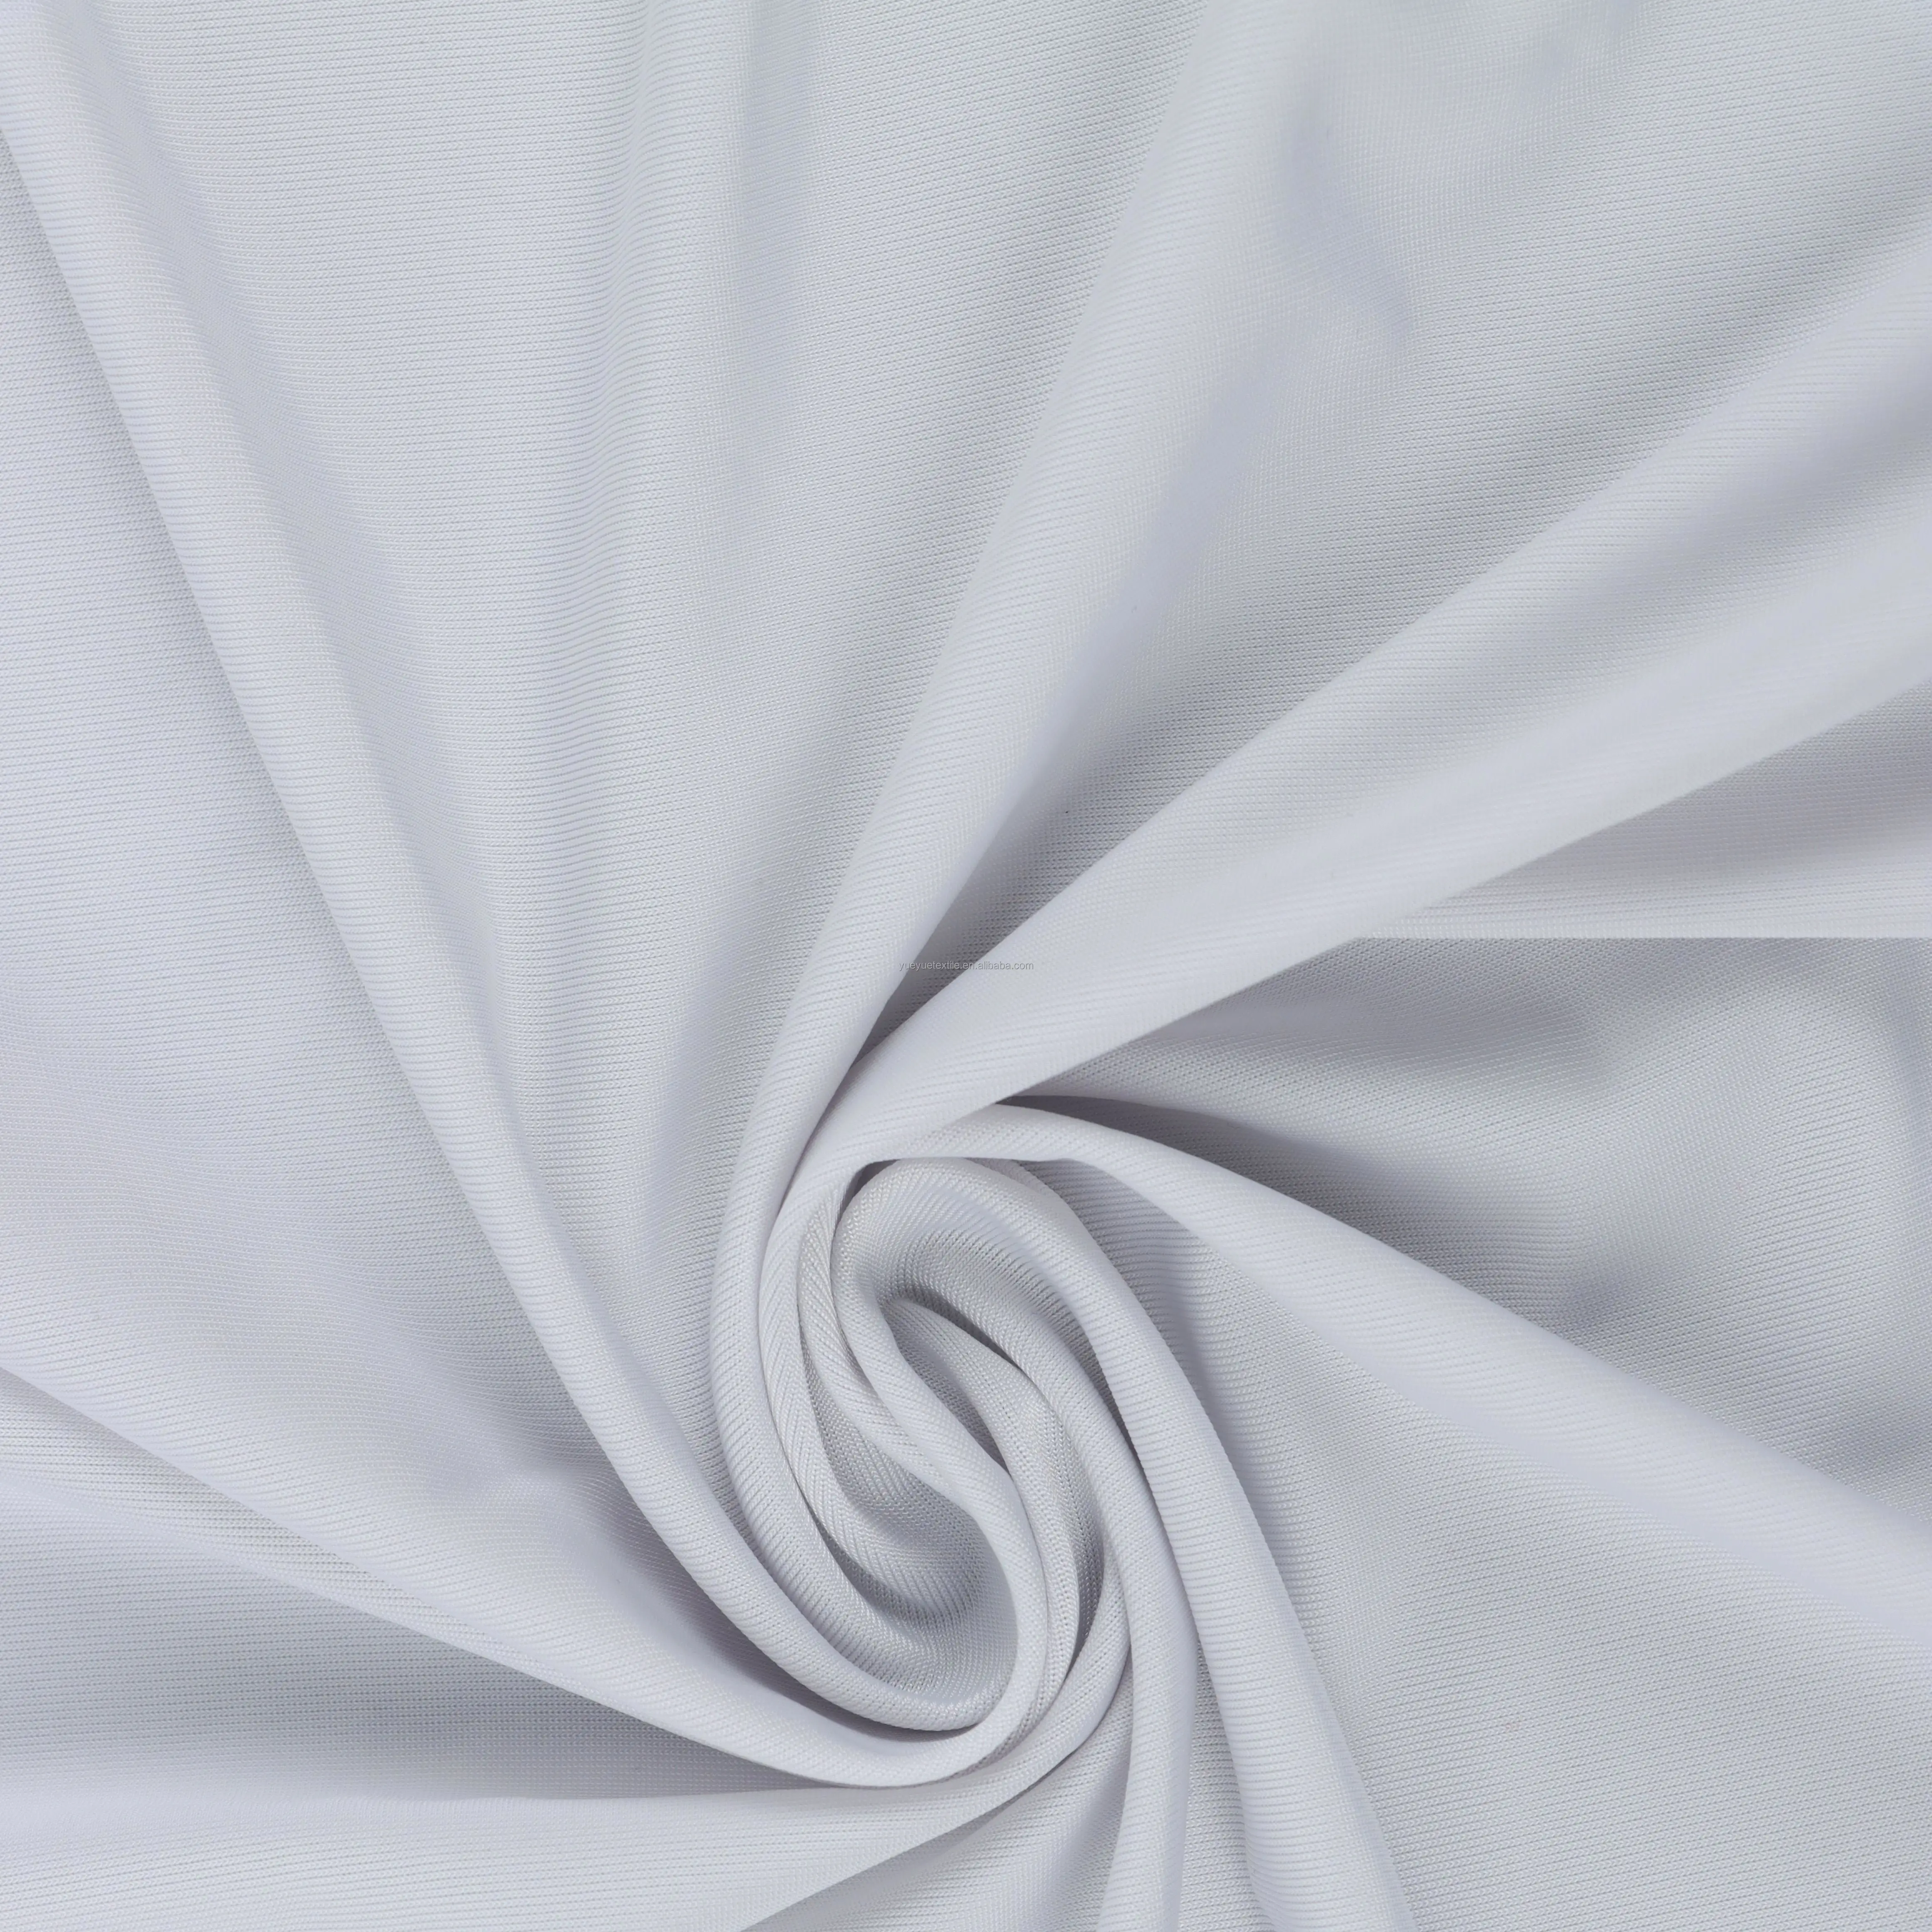 Vendita calda Soft Touch a quattro vie elasticizzato in poliestere Spandex tessuto per abbigliamento Jersey all'ingrosso